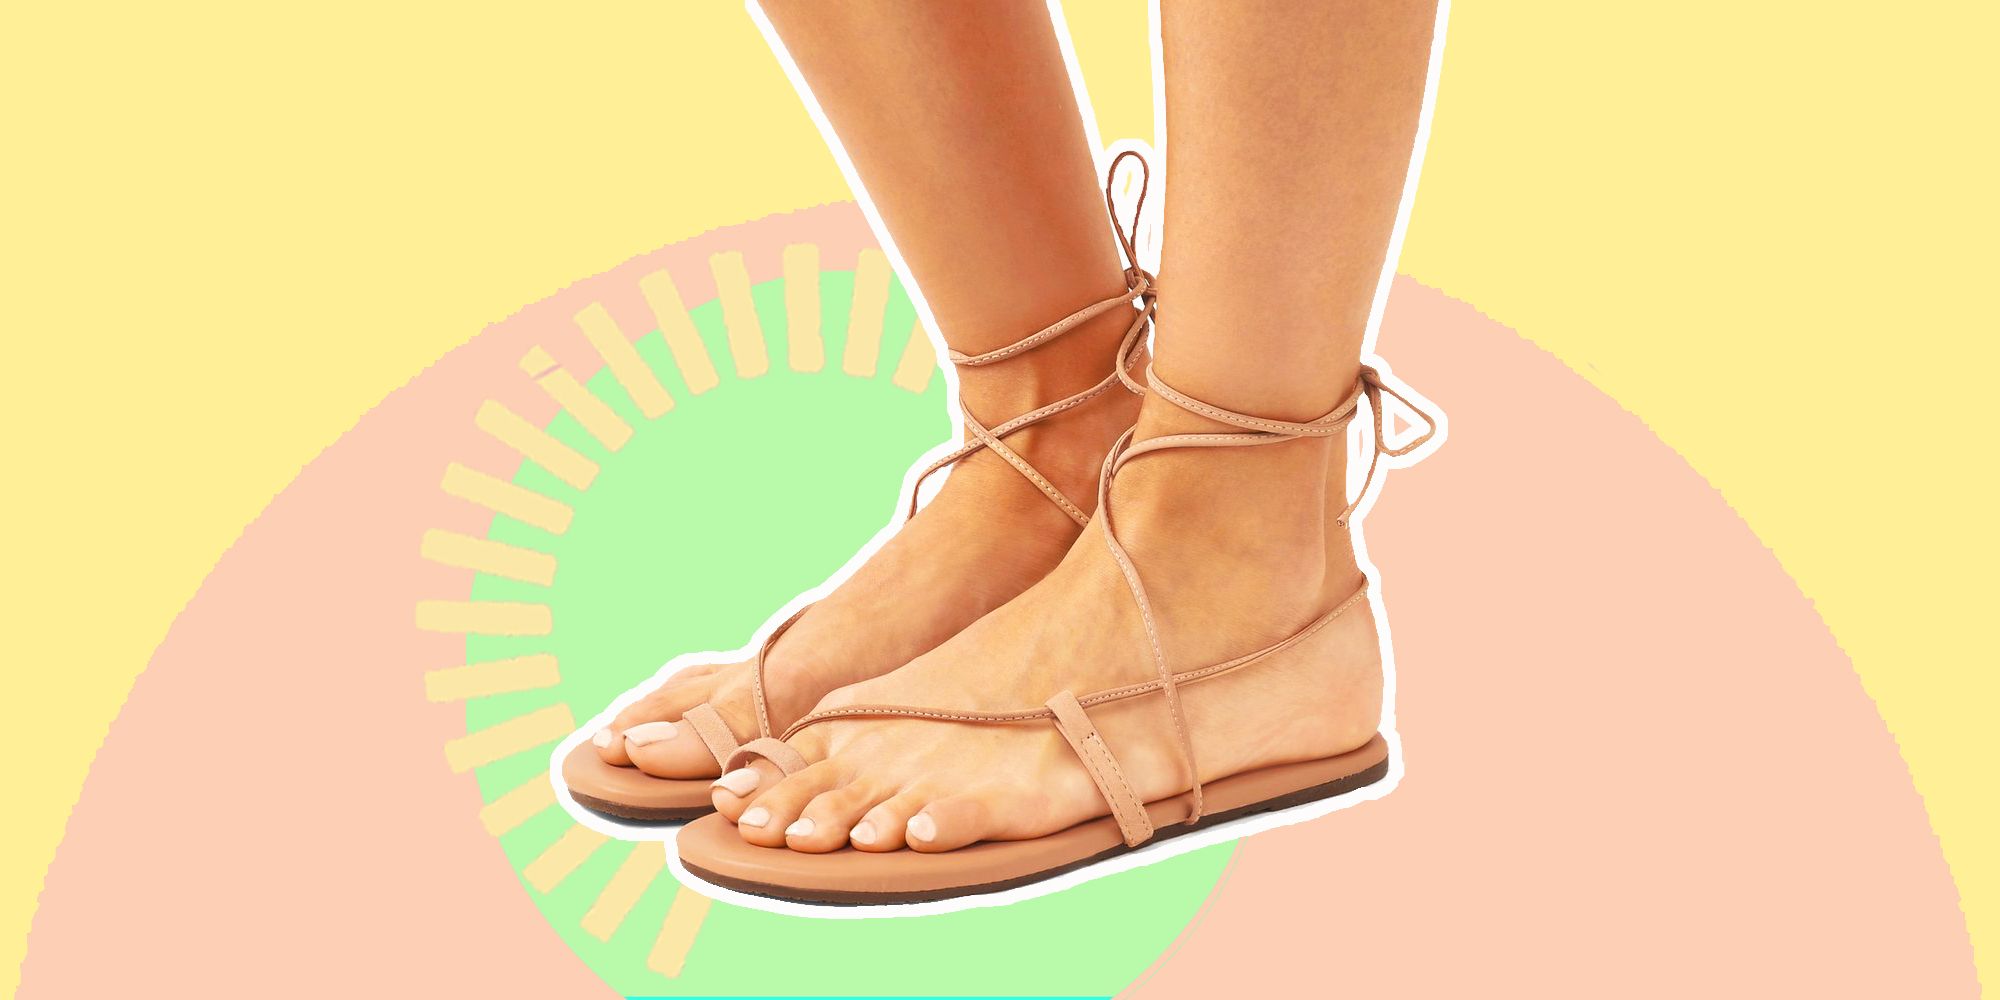 se il brand di scarpe donna tkees in pelle, anche vegana, non ti dice molto recupera qui le scarpe 2020 dell'estate sono nude e pesano zero in valigia